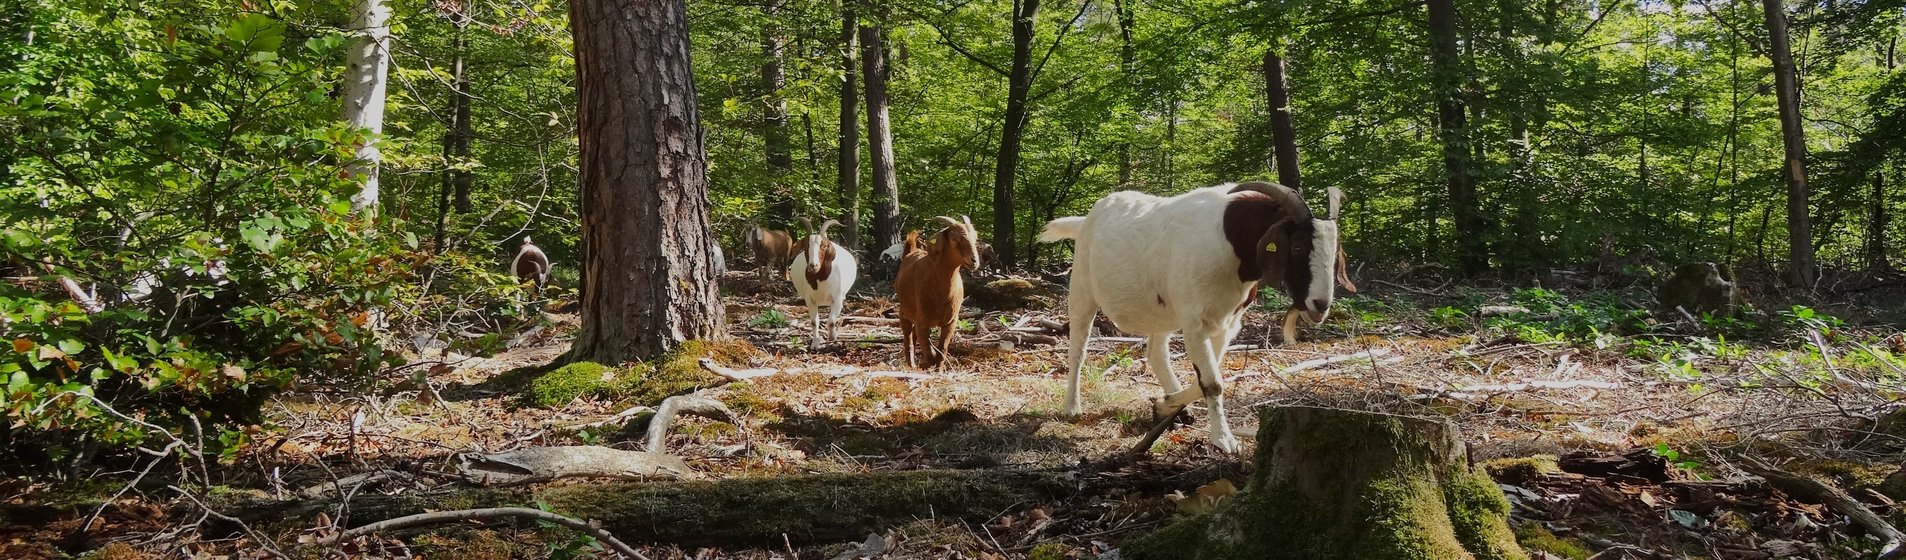 Mehrere Ziegen laufen hintereinander durch den Wald.